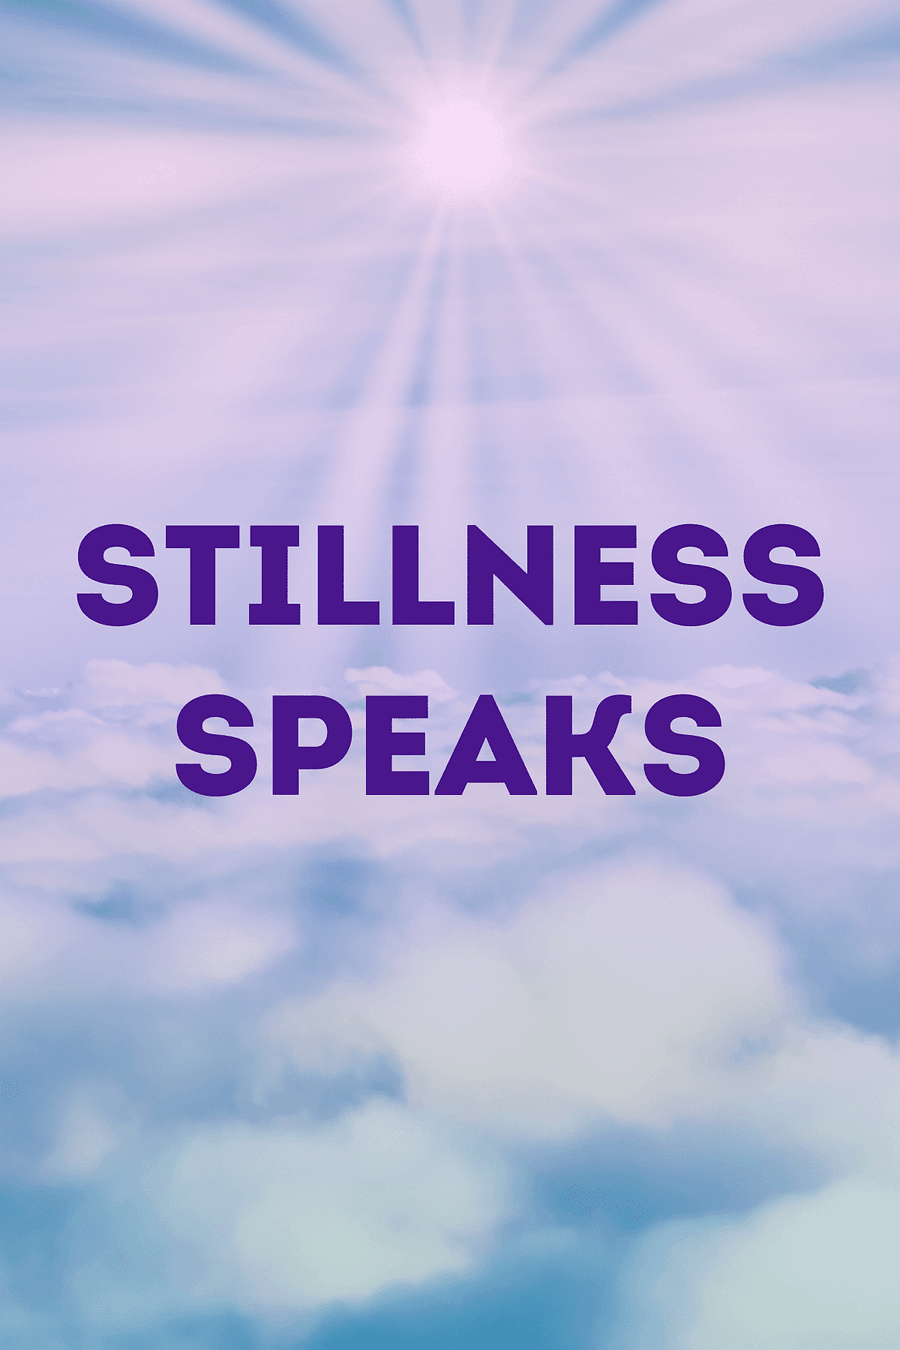 Stillness Speaks by Eckhart Tolle - Book Summary